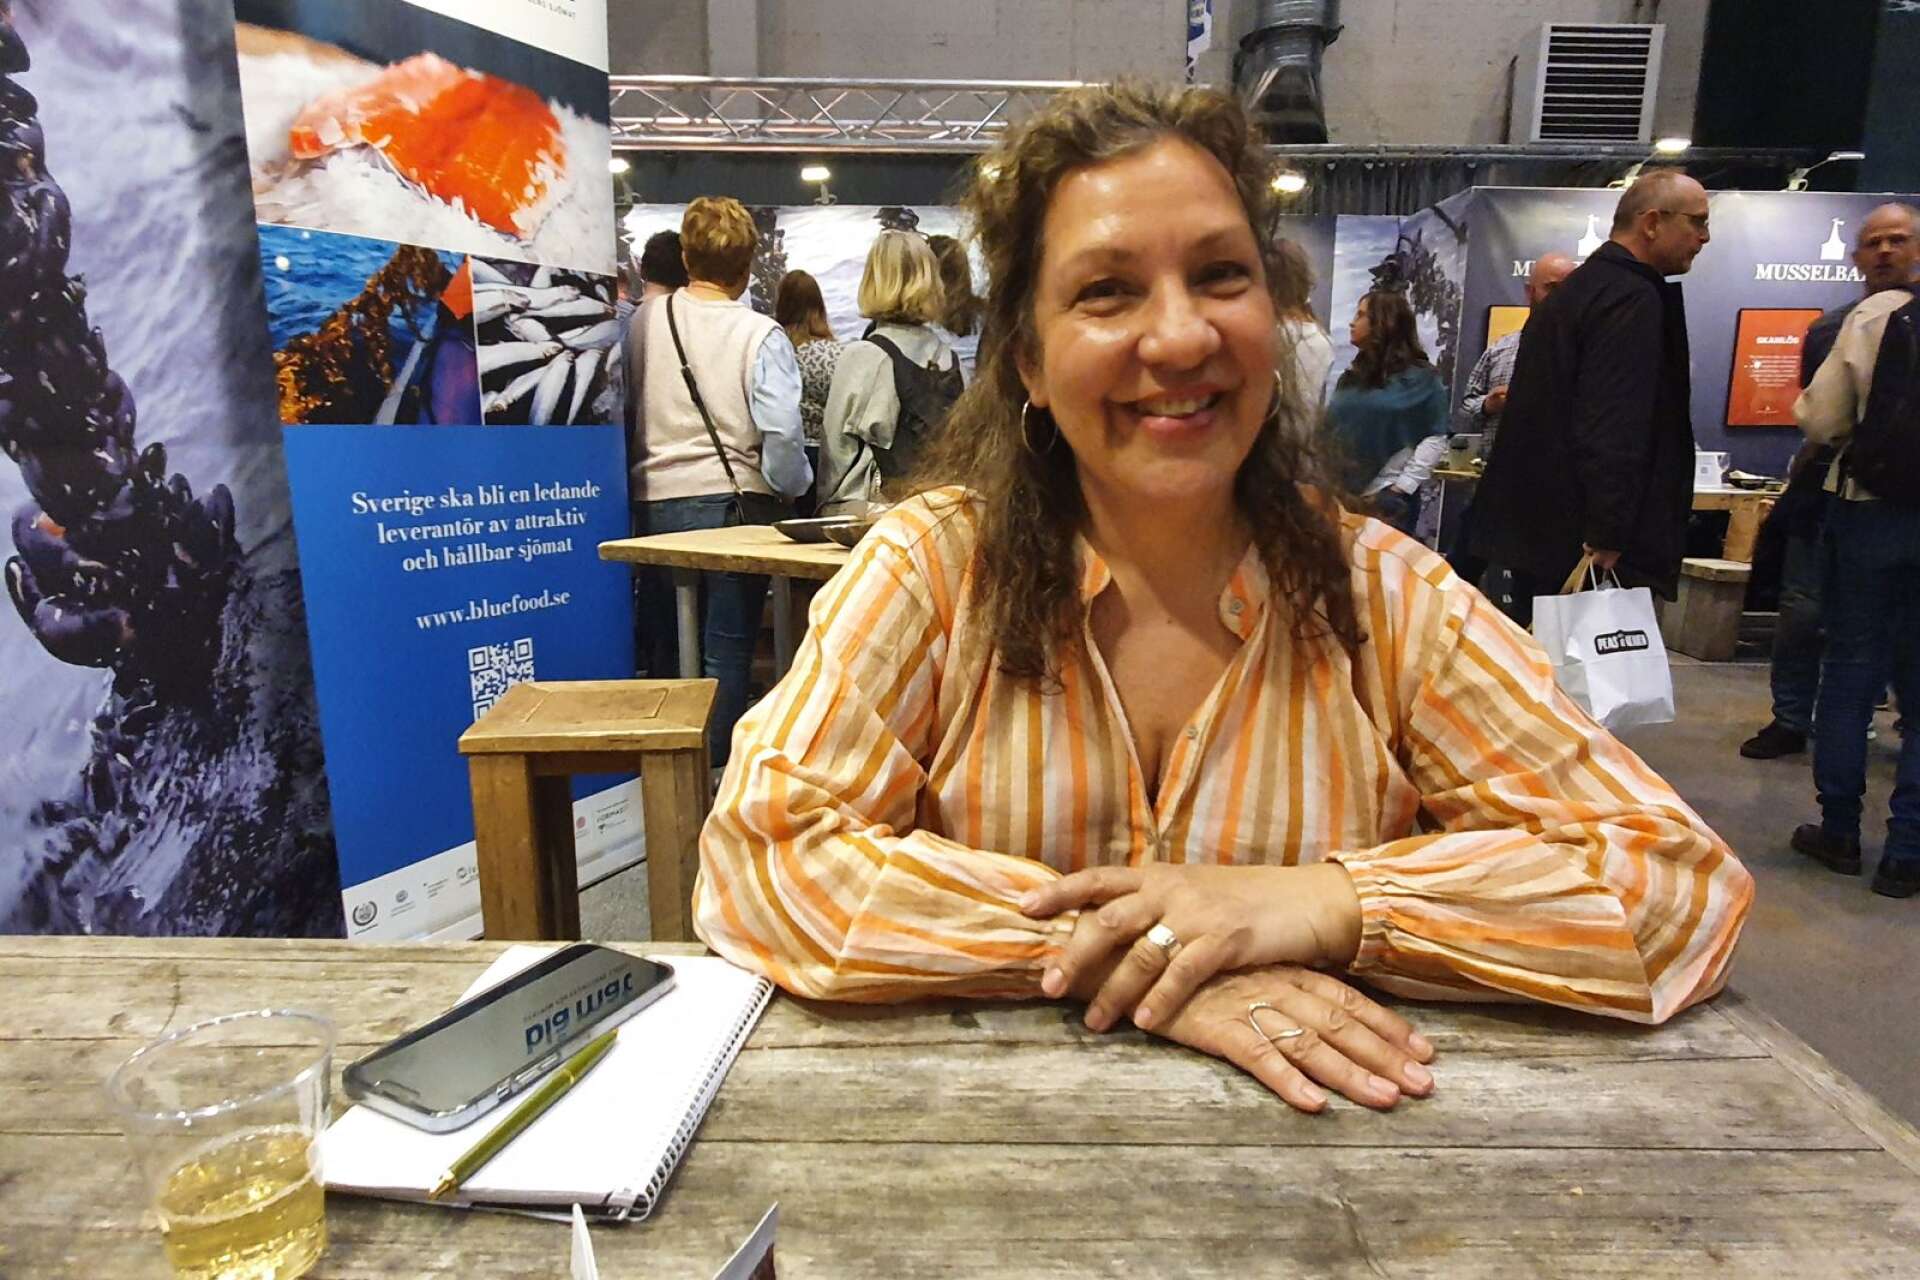 Matjournalisten och kokboksförfattaren Maria Zihammou, som växte upp i Åmål, har fått ett fint pris för sin bok Asiatisk mat, som anses vara den bästa i sin genre i Sverige.